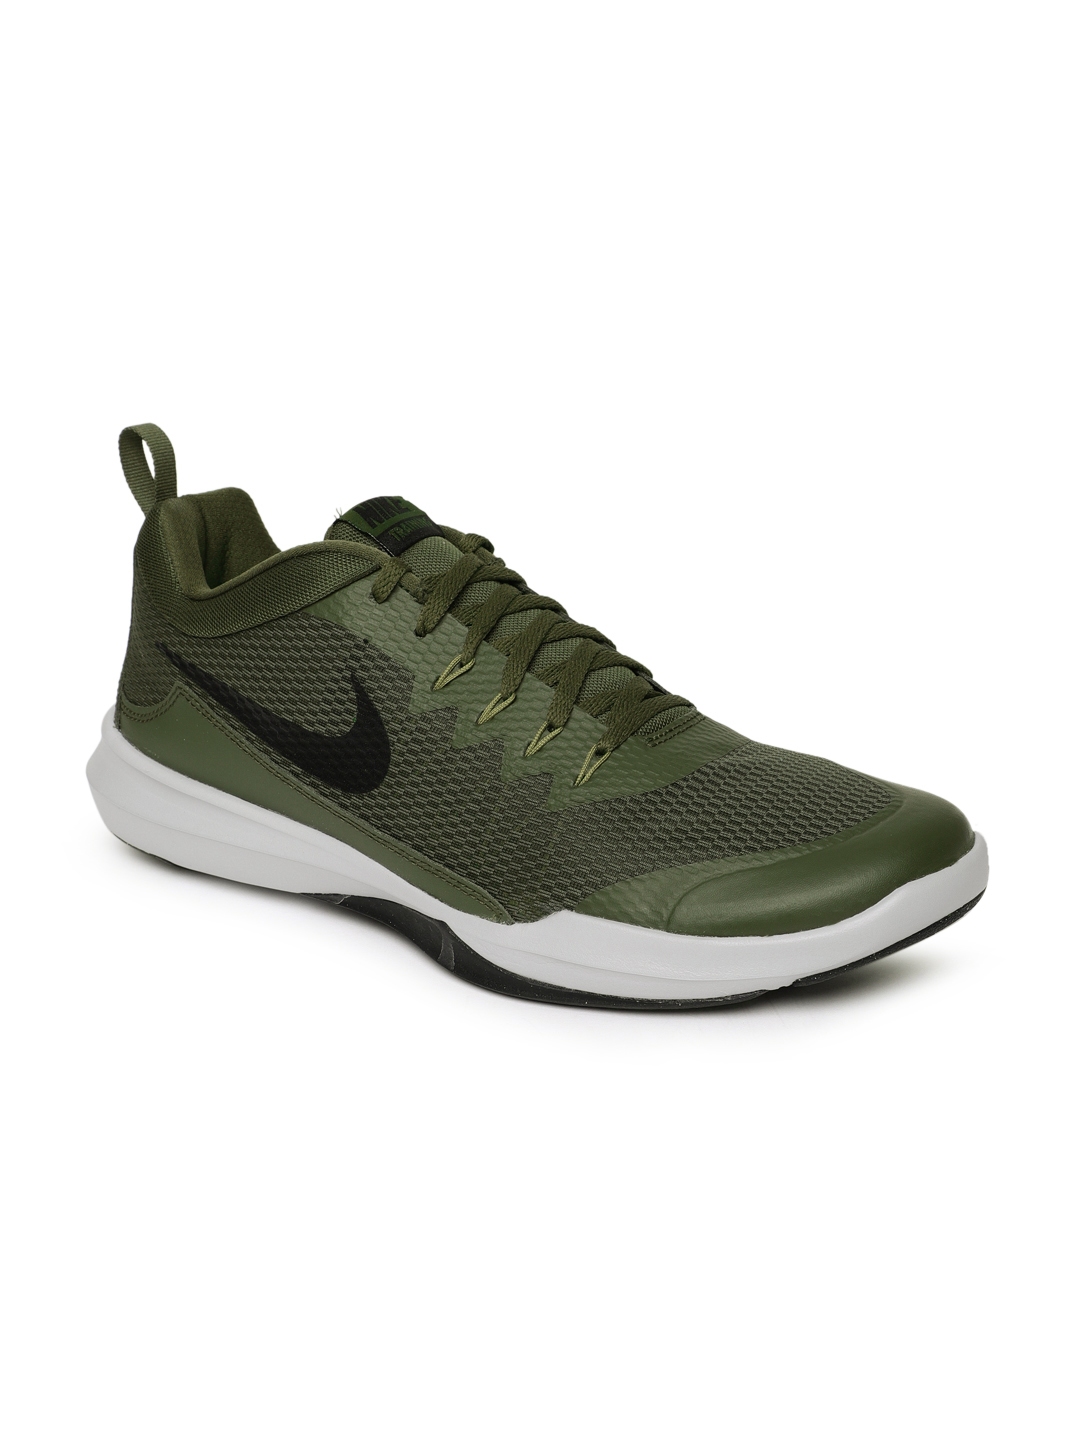 Buy Nike Men Olive Green Solid LEGEND 